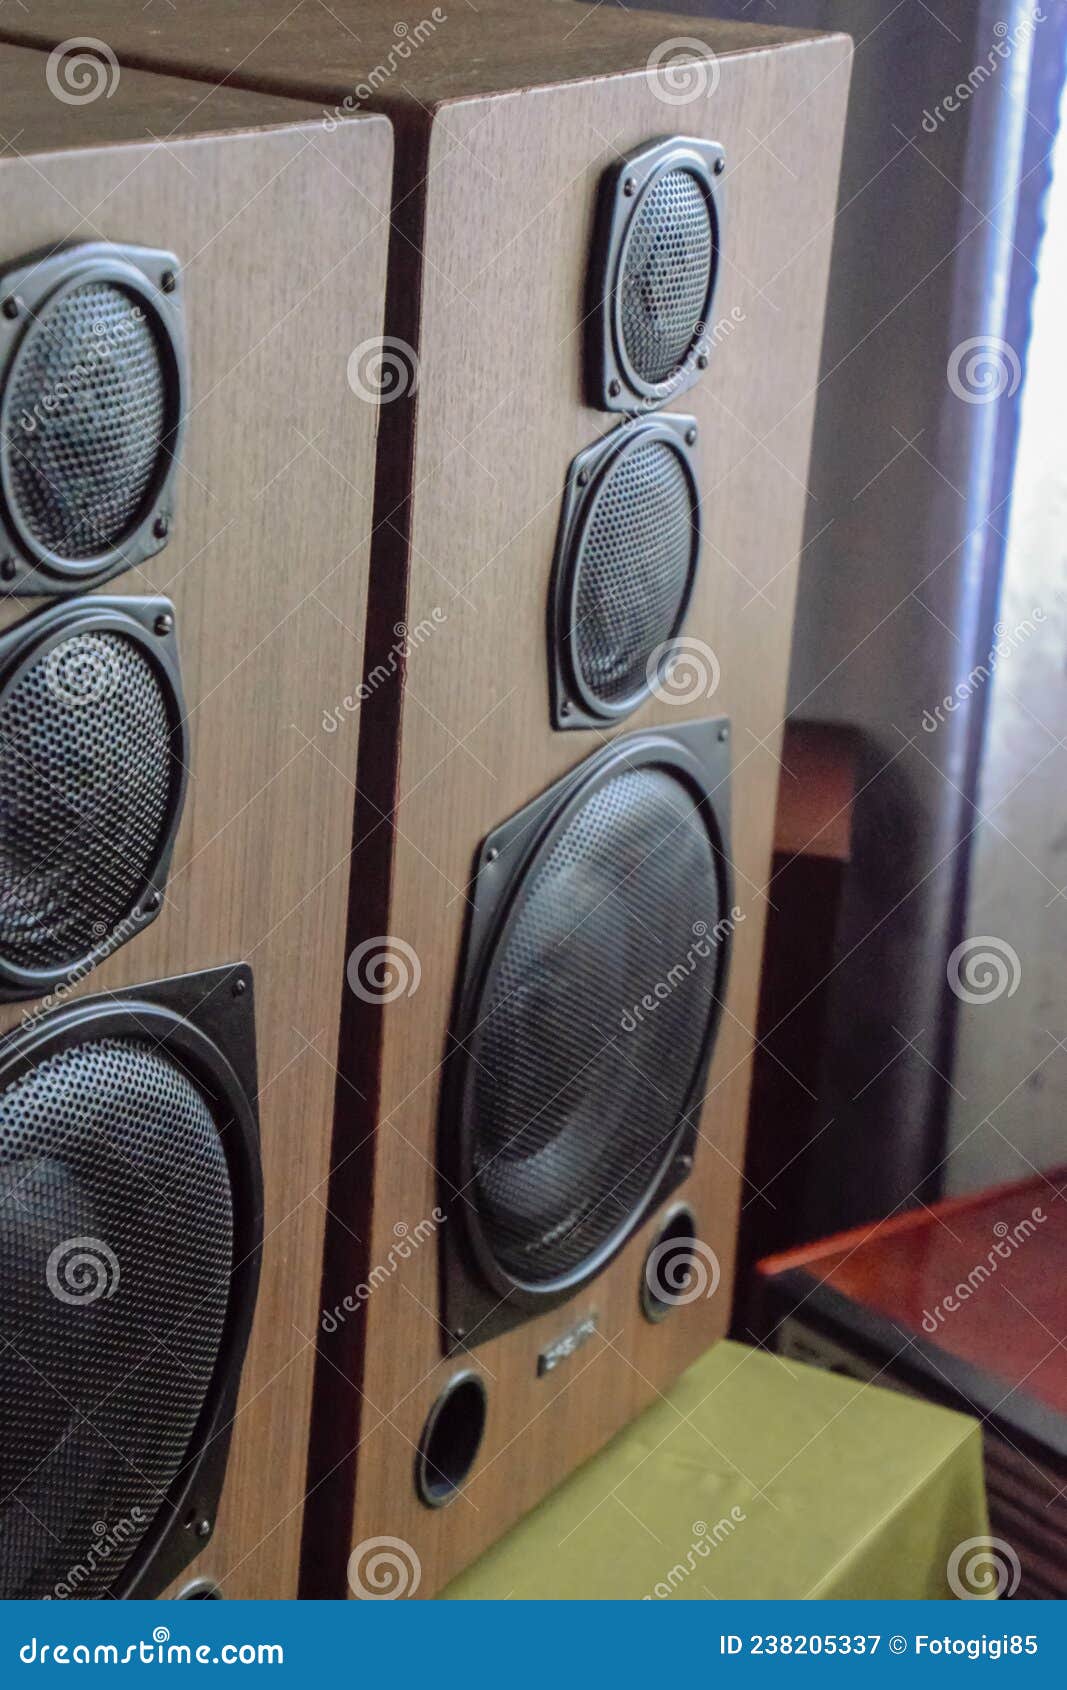 large soviet speakers orbita 35as-016. vintage